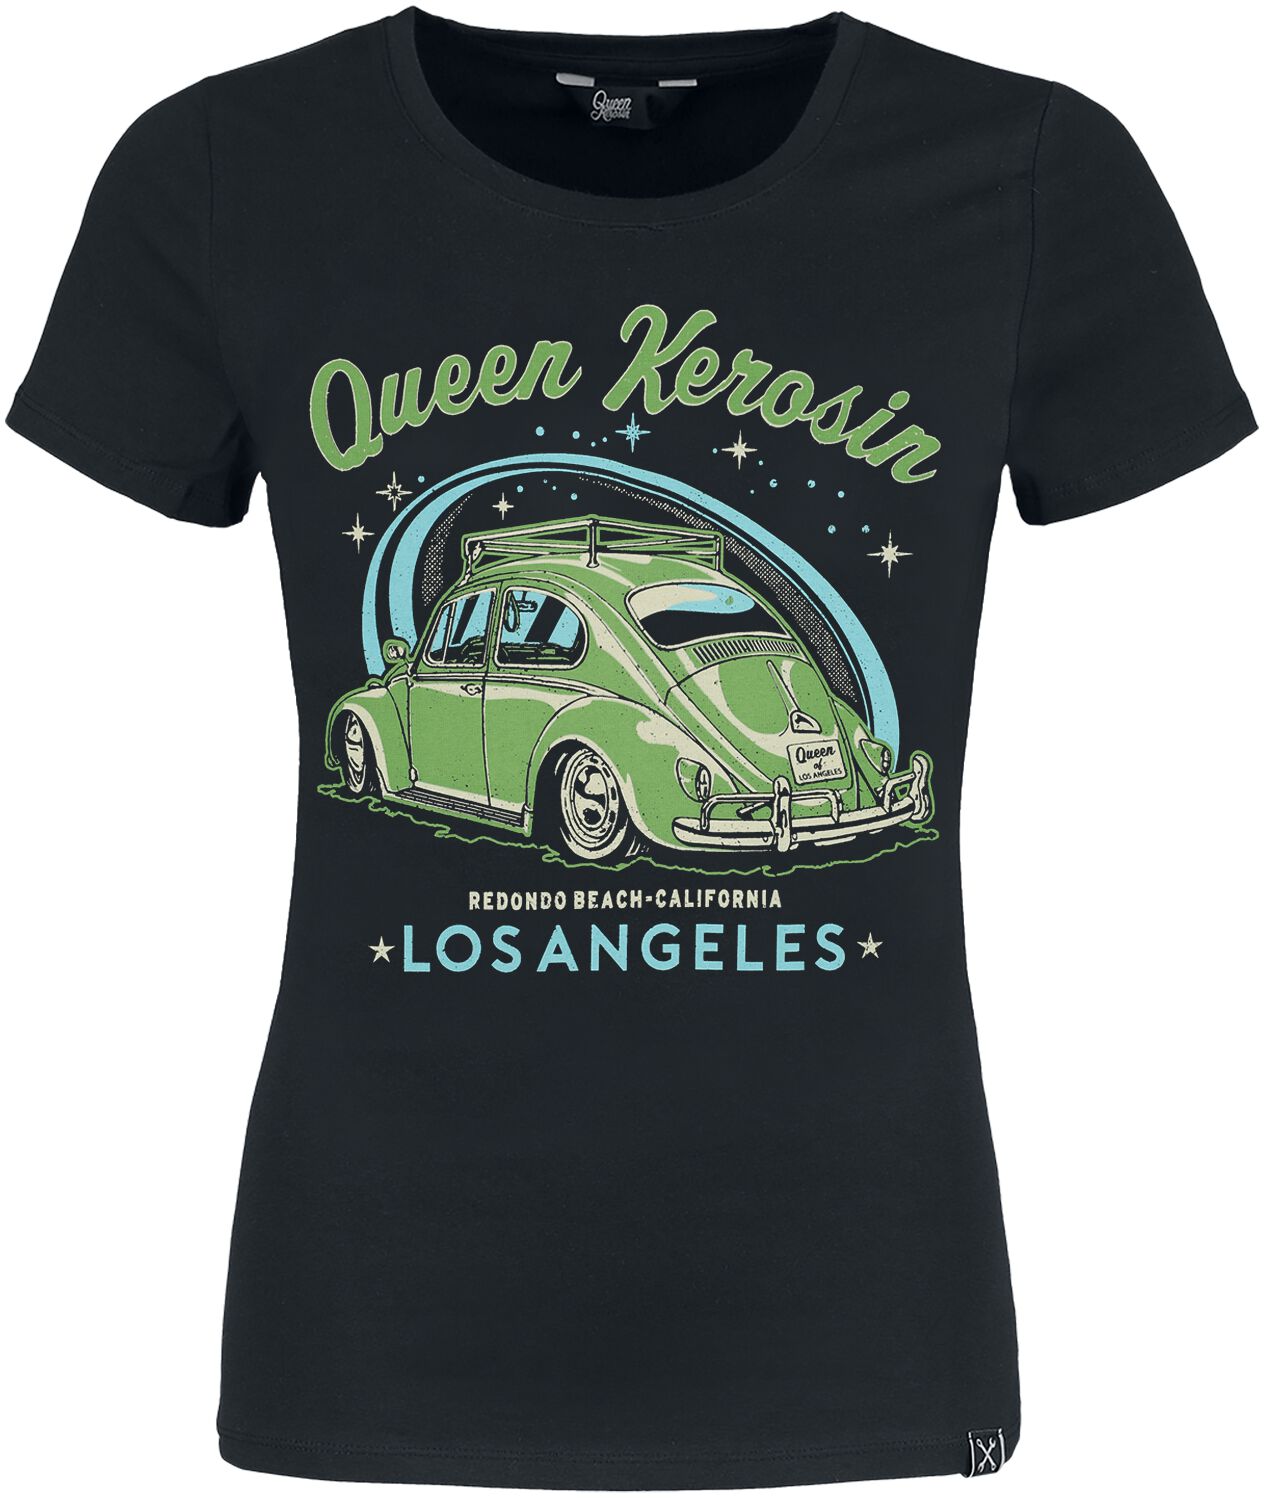 Queen Kerosin - Los Angeles - T-Shirt - schwarz